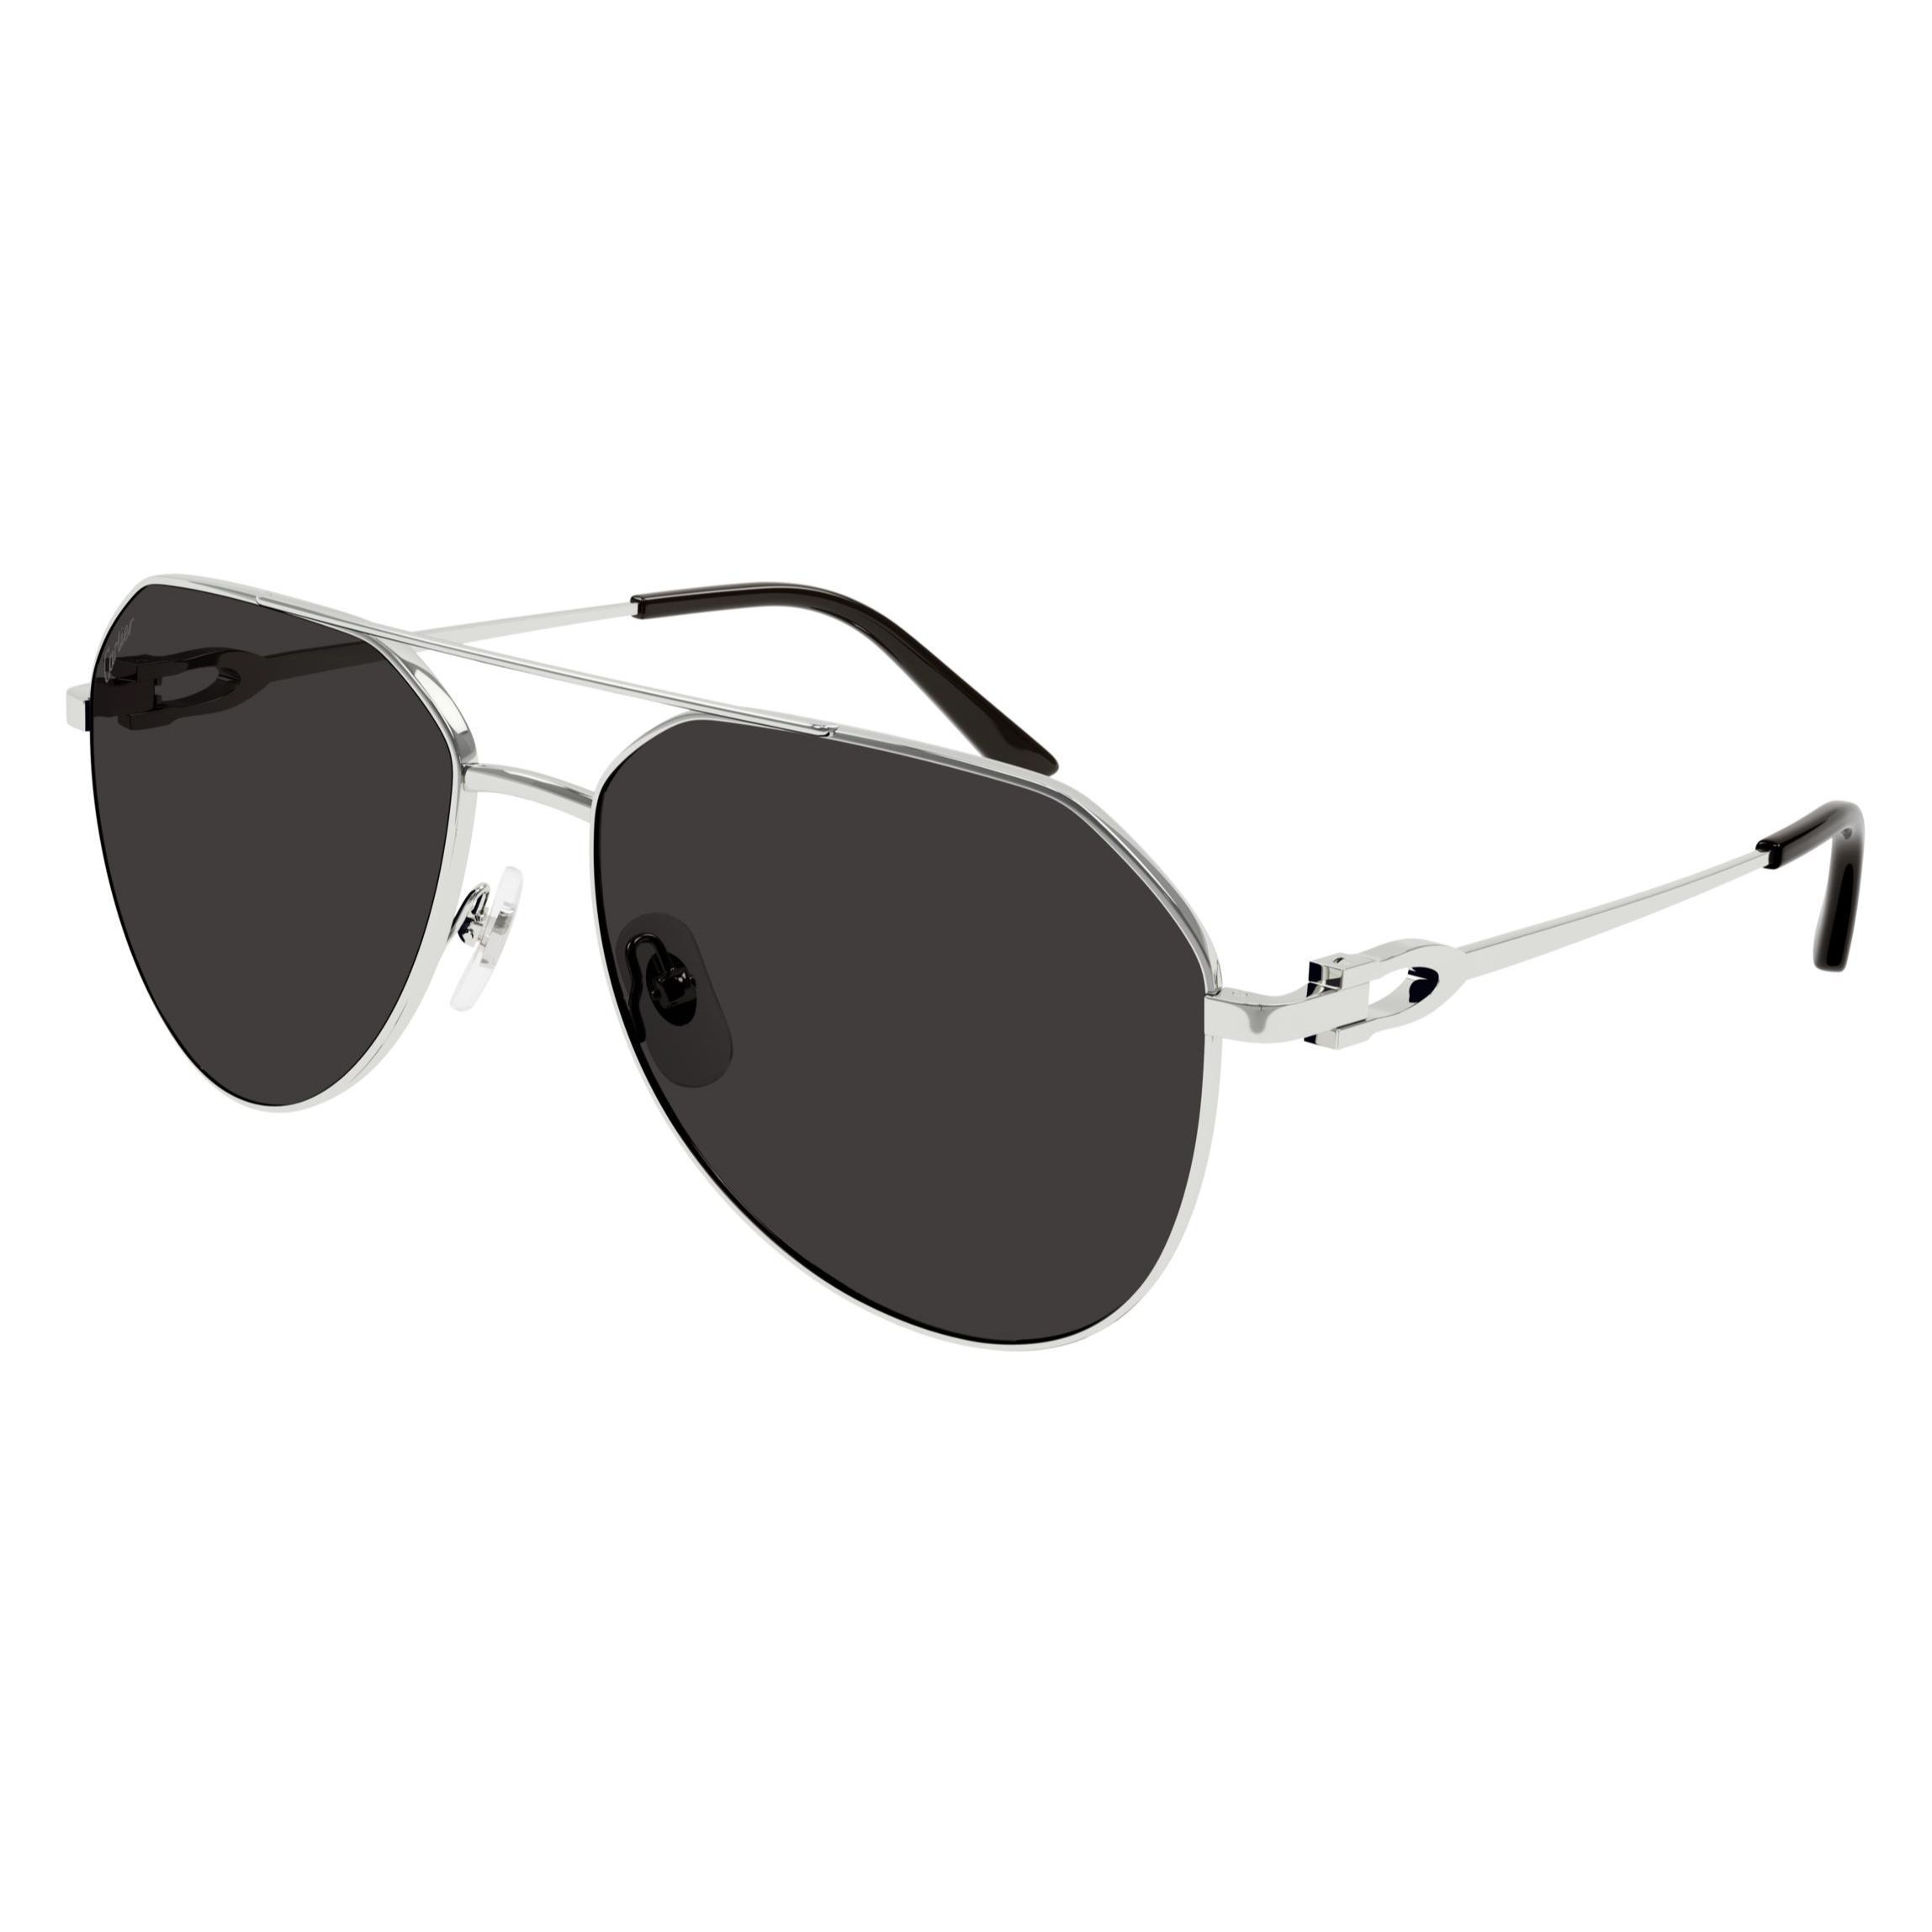 CT0364S Pilot Sunglasses 001 - size 59